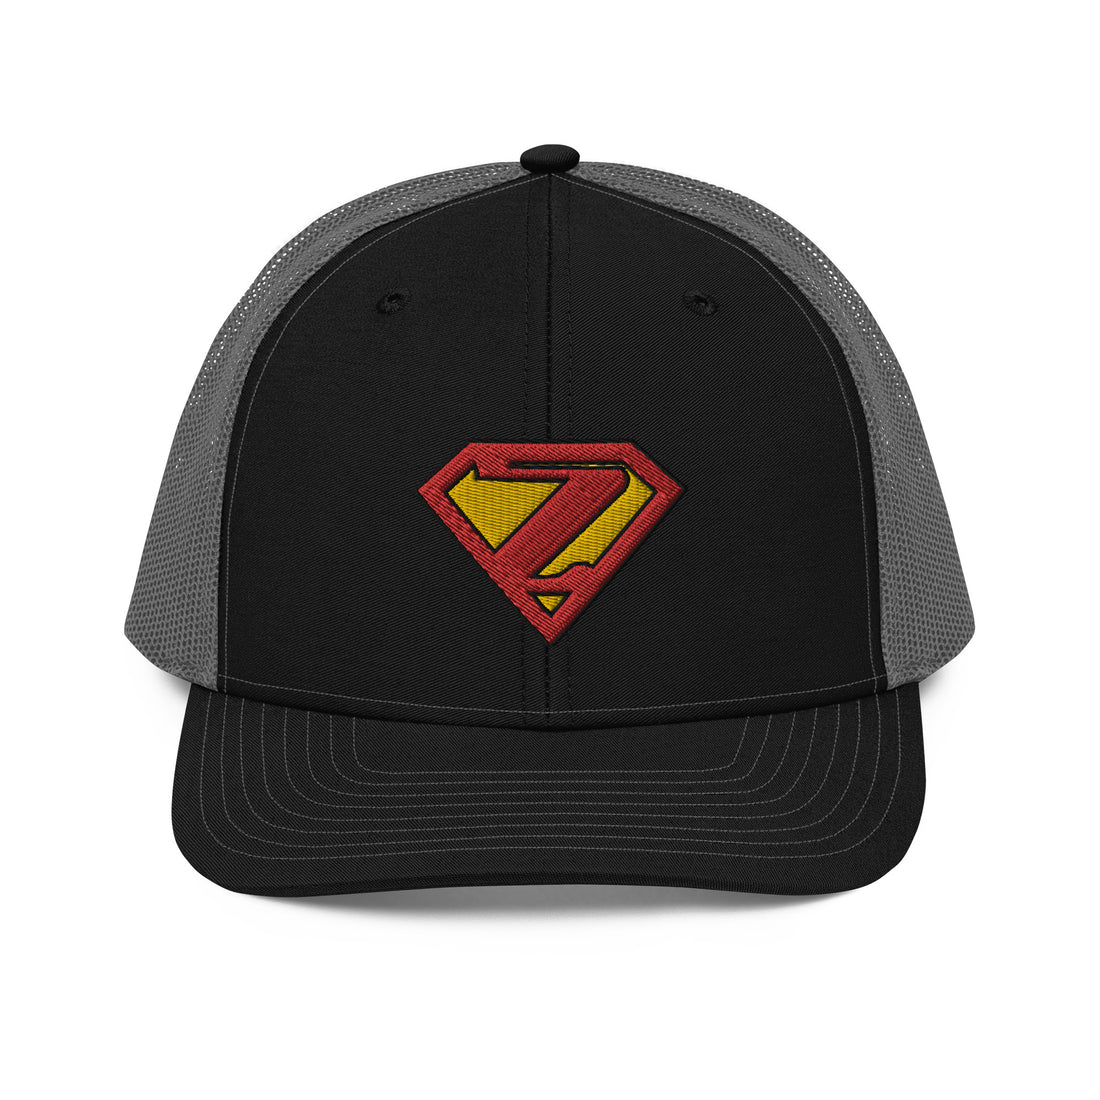 Super Zen Trucker Cap